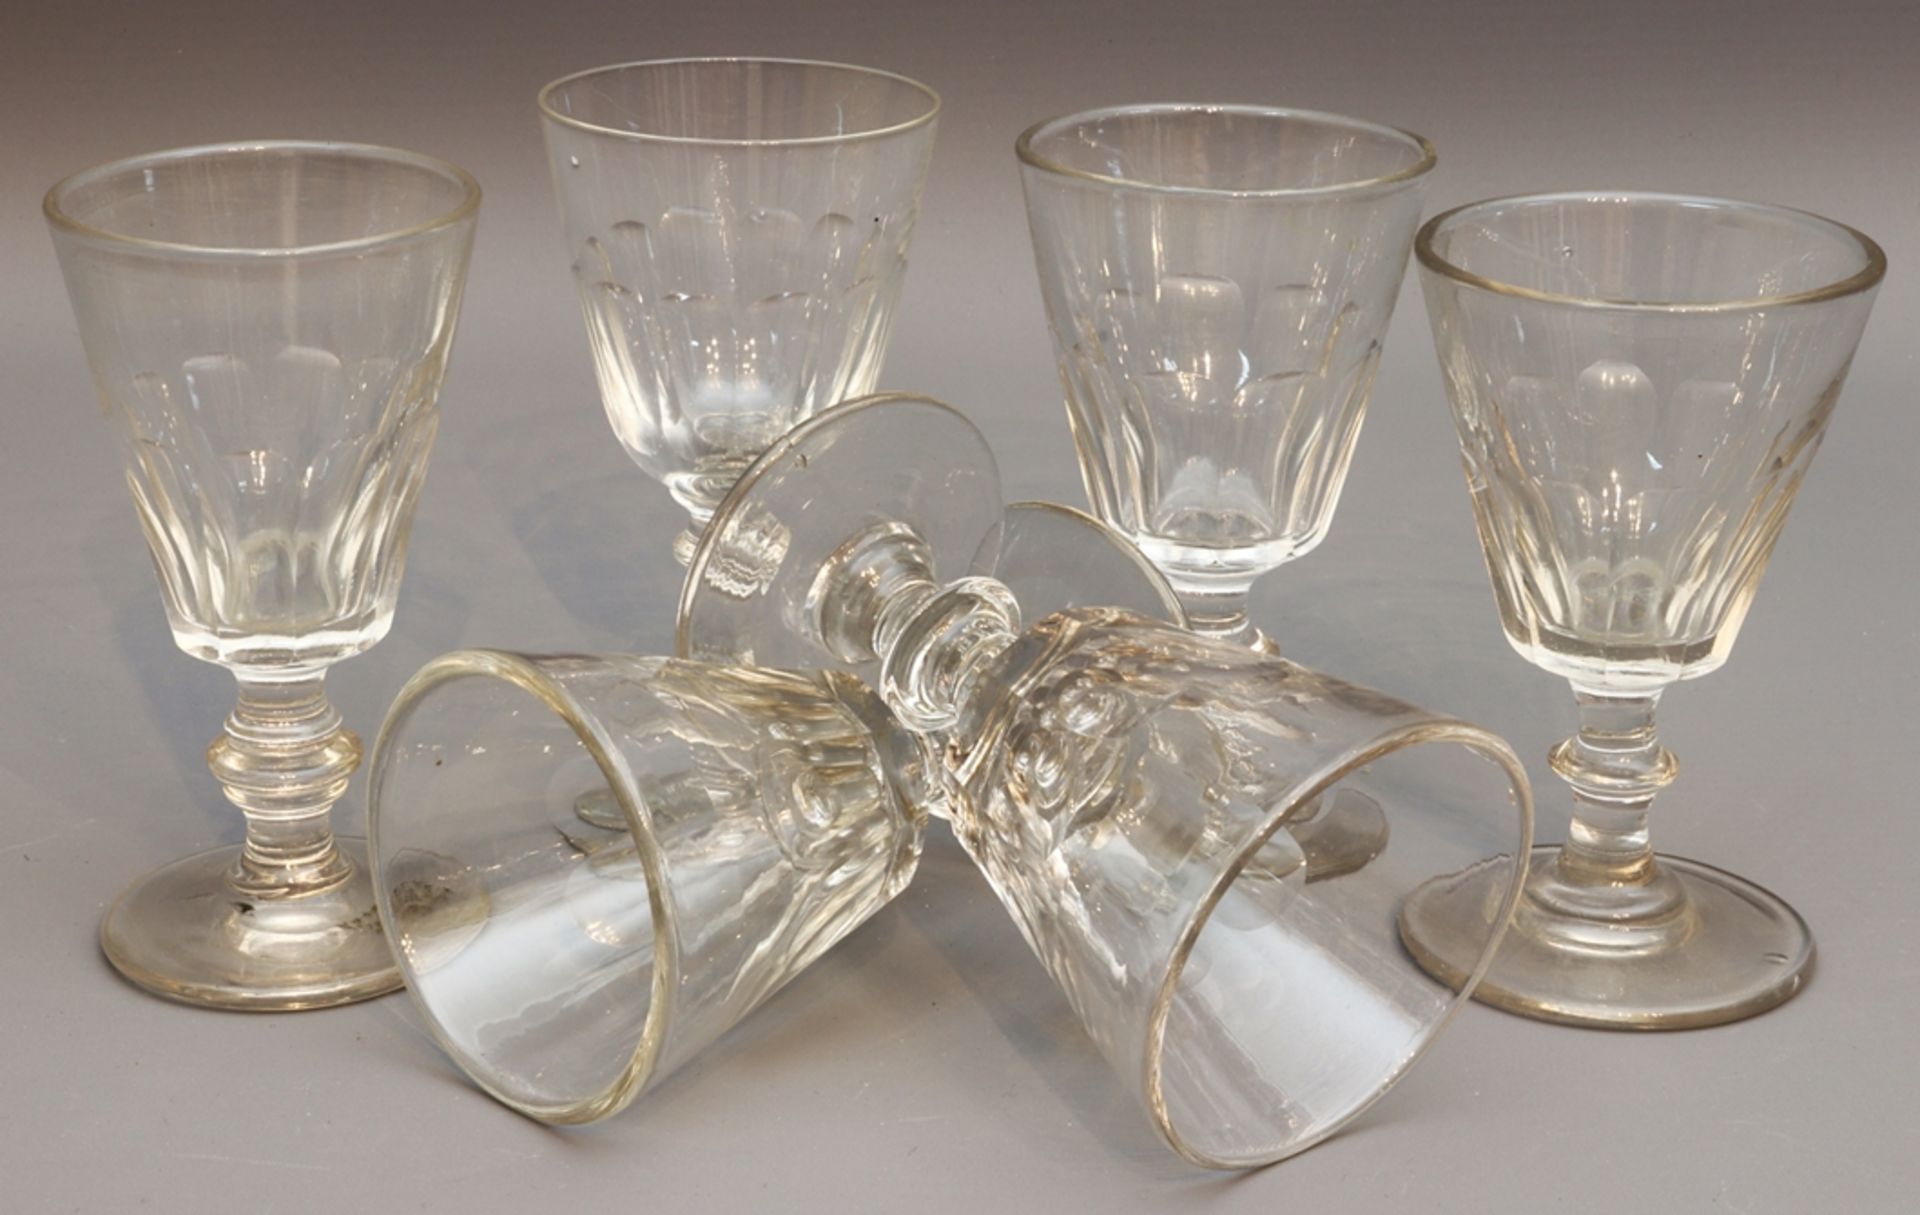 Six Biedermeier sweet wine glasses circa 1840-1860, German